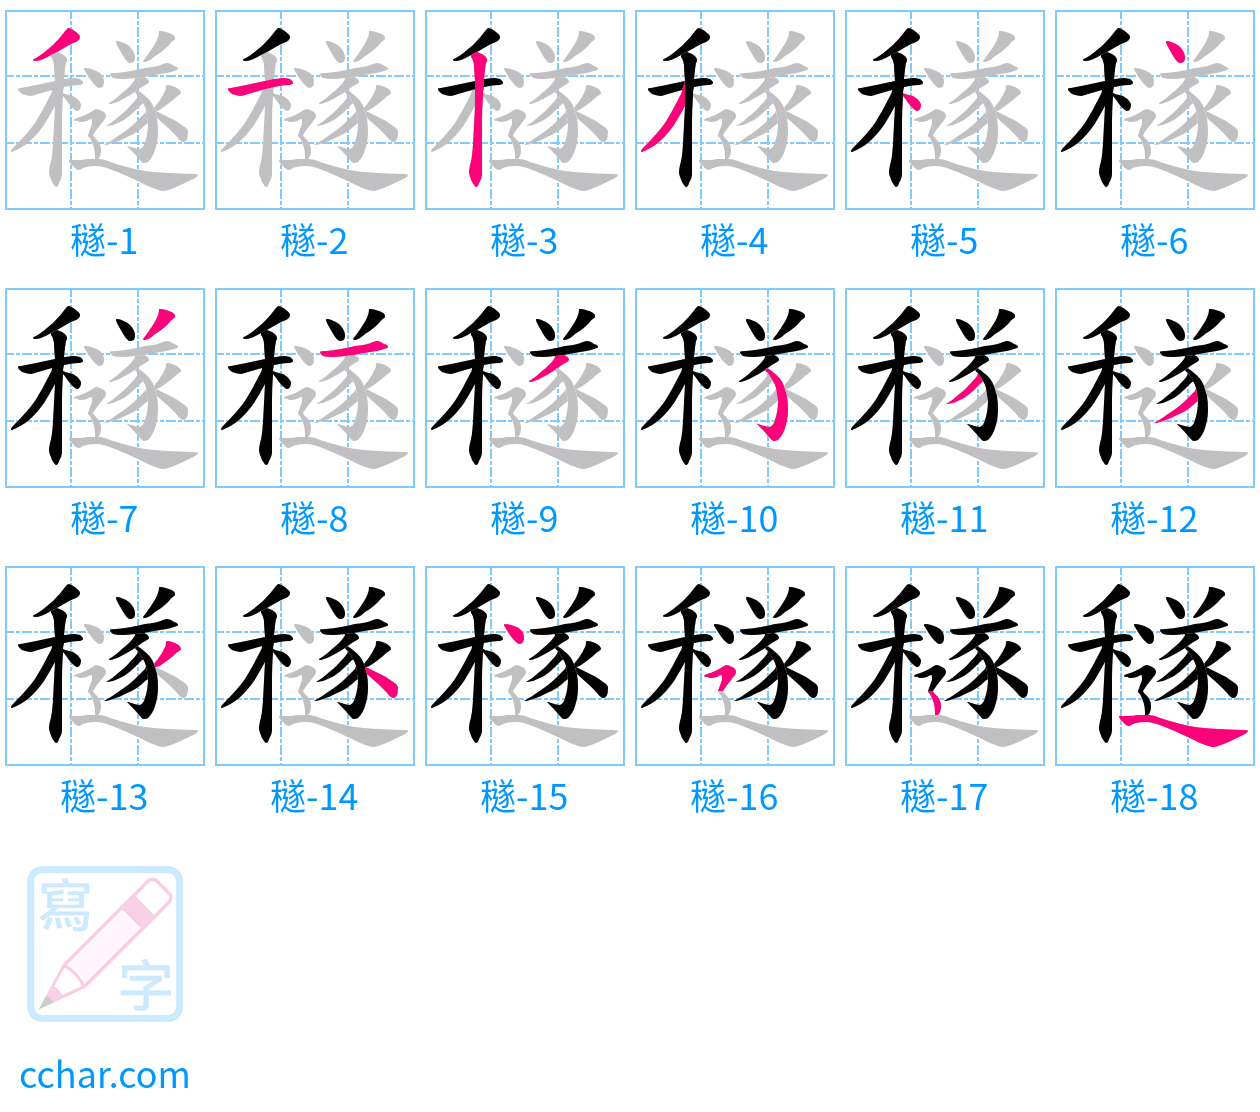 穟 stroke order step-by-step diagram